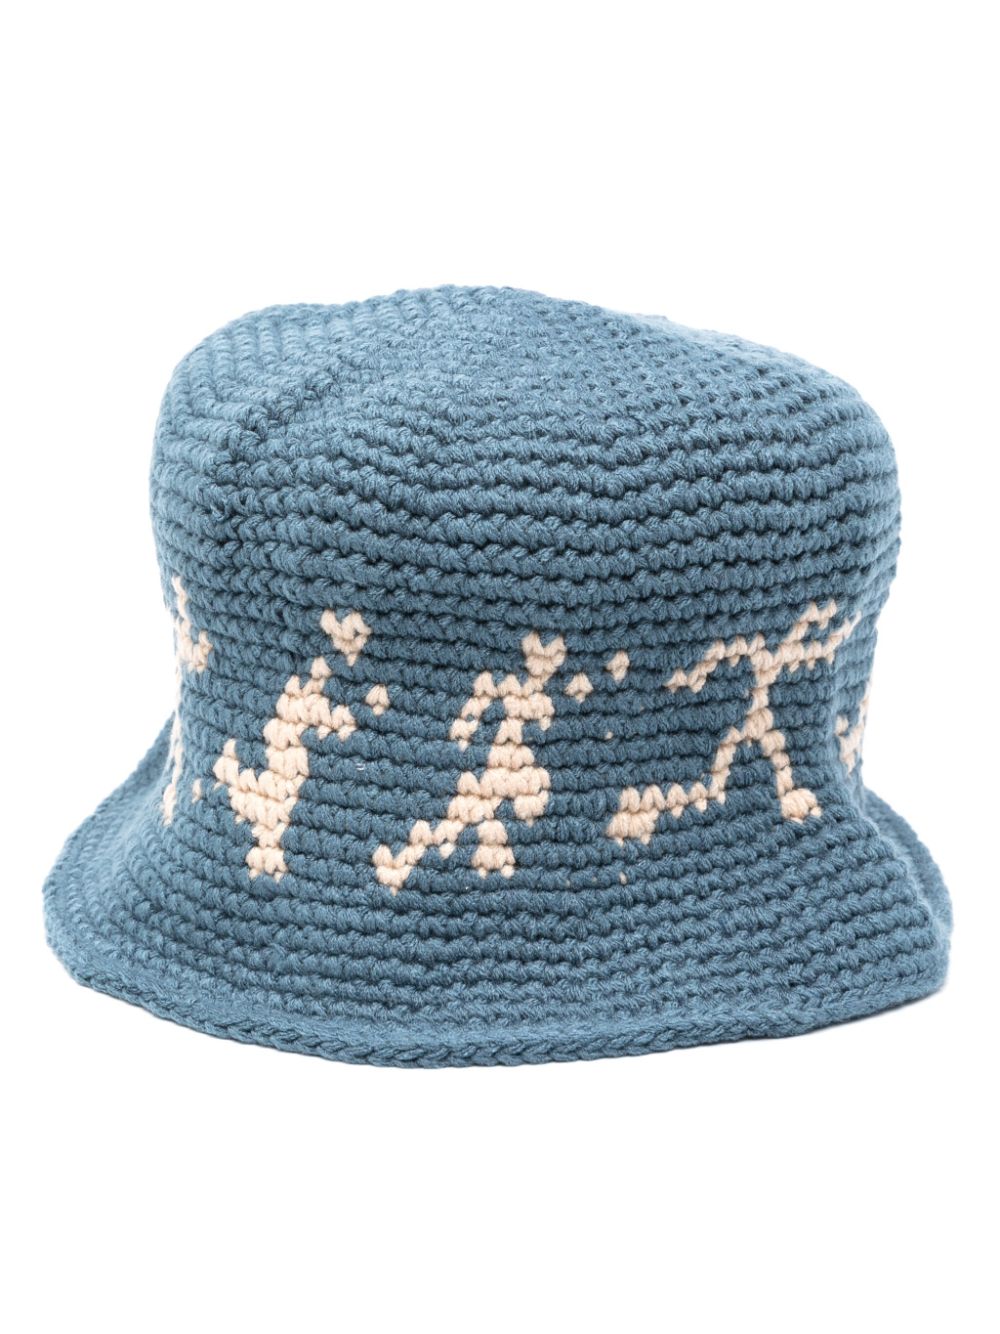 KIDSUPER KIDSUPER- Embroidered Crochet Cap